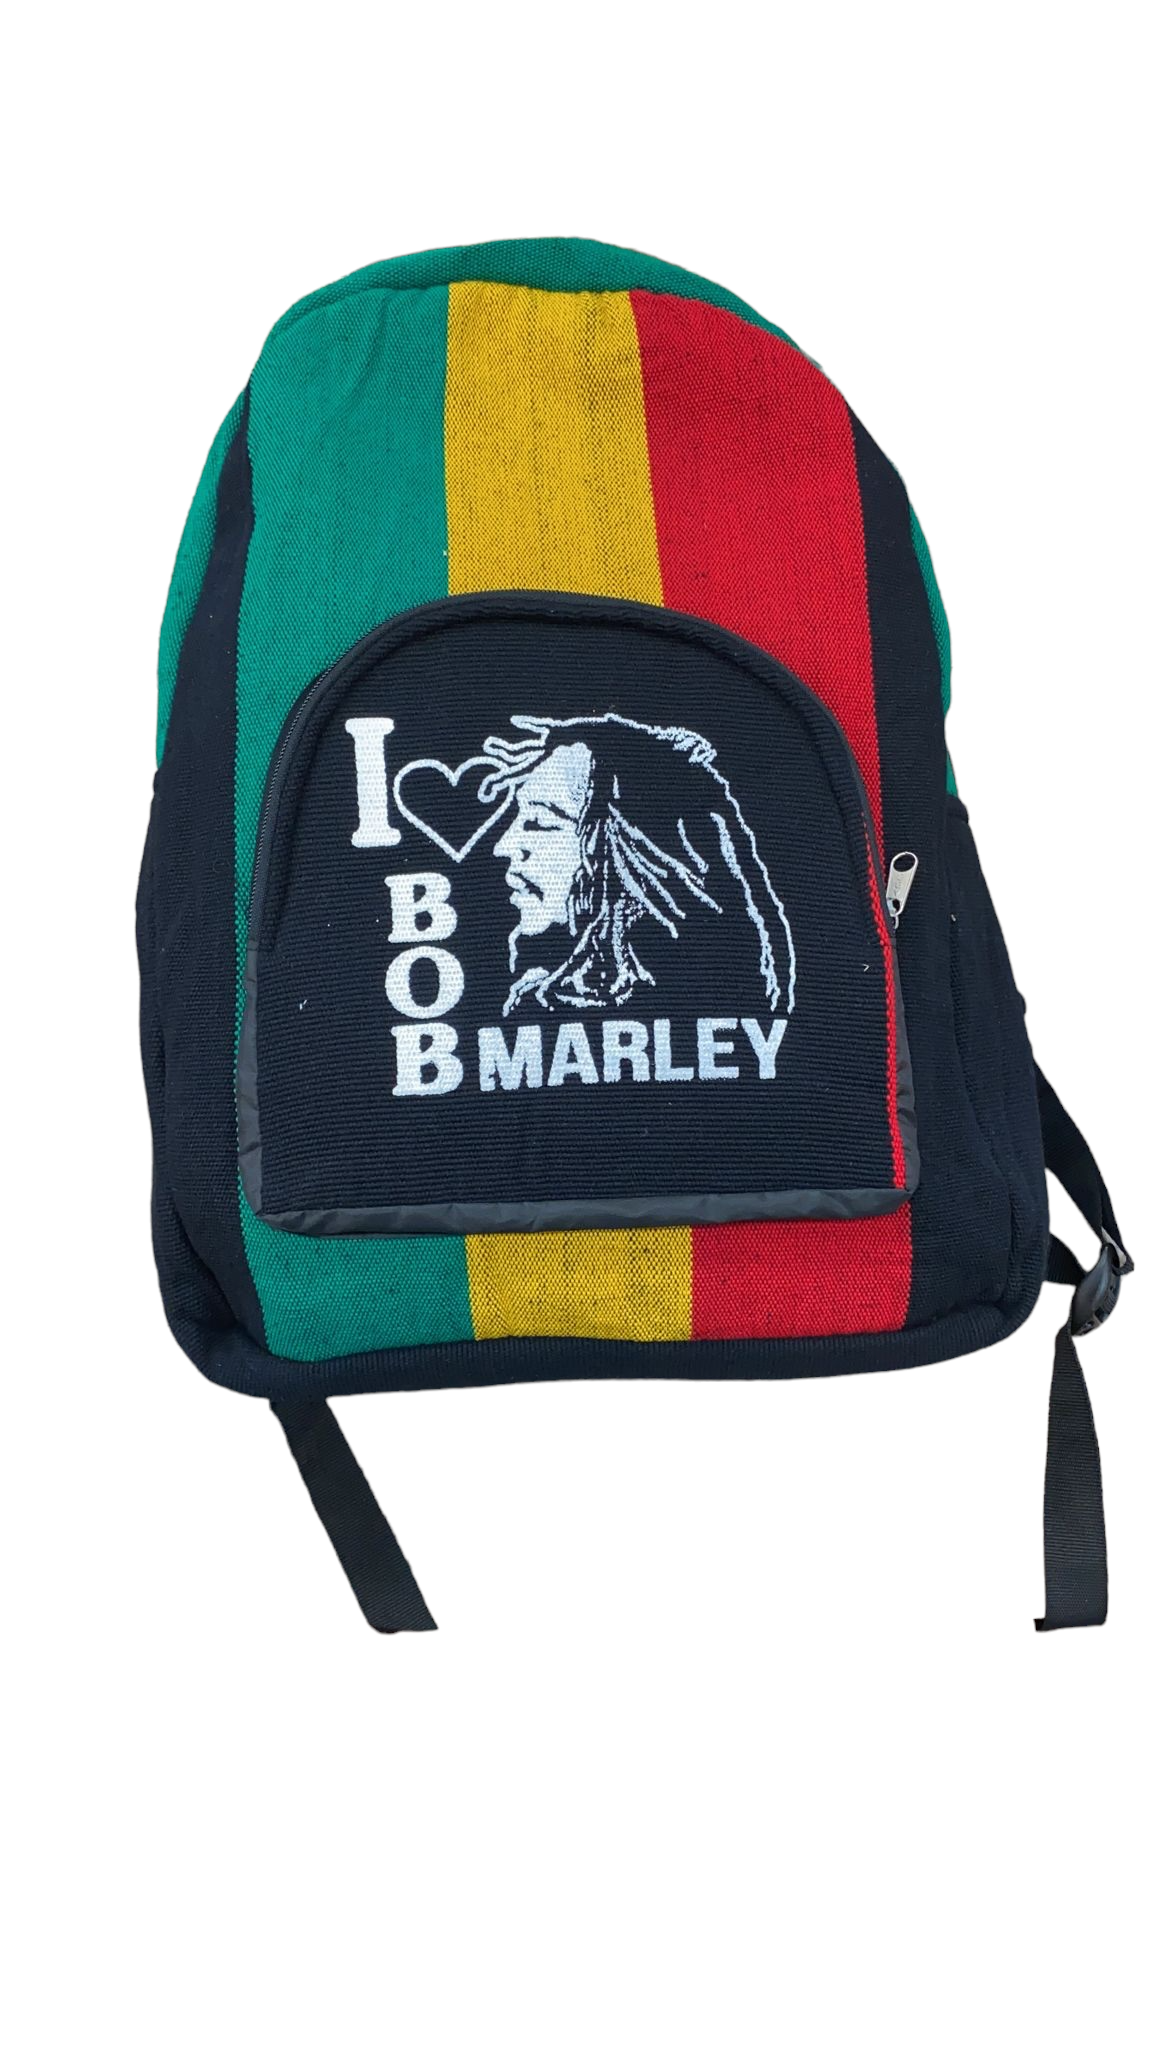 Backpack Bob Marley design